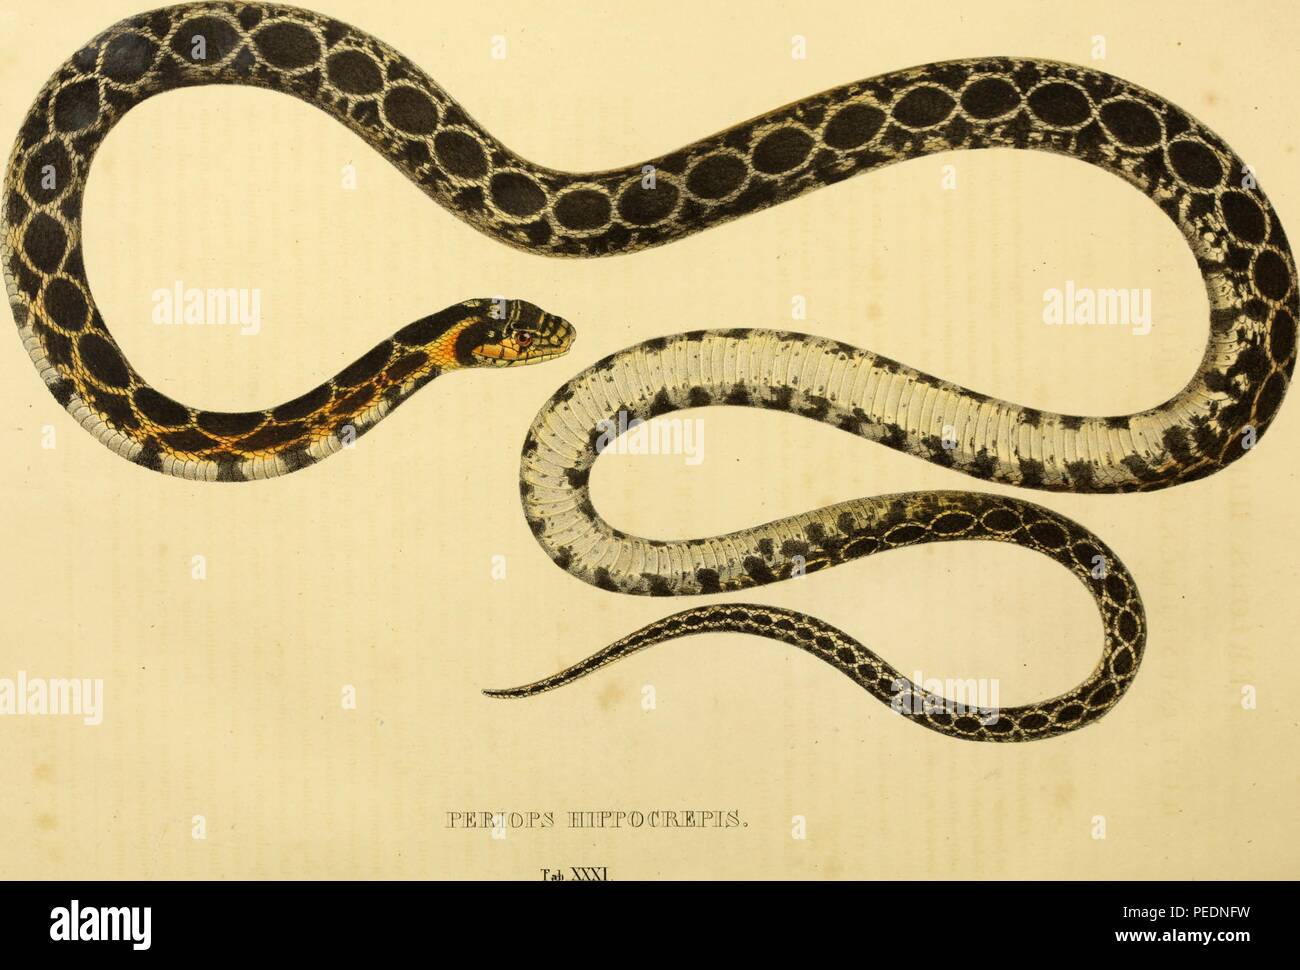 Impresión en color representando una serpiente con negro, crema, gris y naranja, subtitulado "Periops marcas Hippocrepis, ' pero comúnmente conocido como el látigo de herradura Hemorrhois hippocrepis (serpiente), una especie de la familia Colubridae que es originaria del norte de África y Suroeste de Europa, 1828. Cortesía de Internet Archive. () Foto de stock